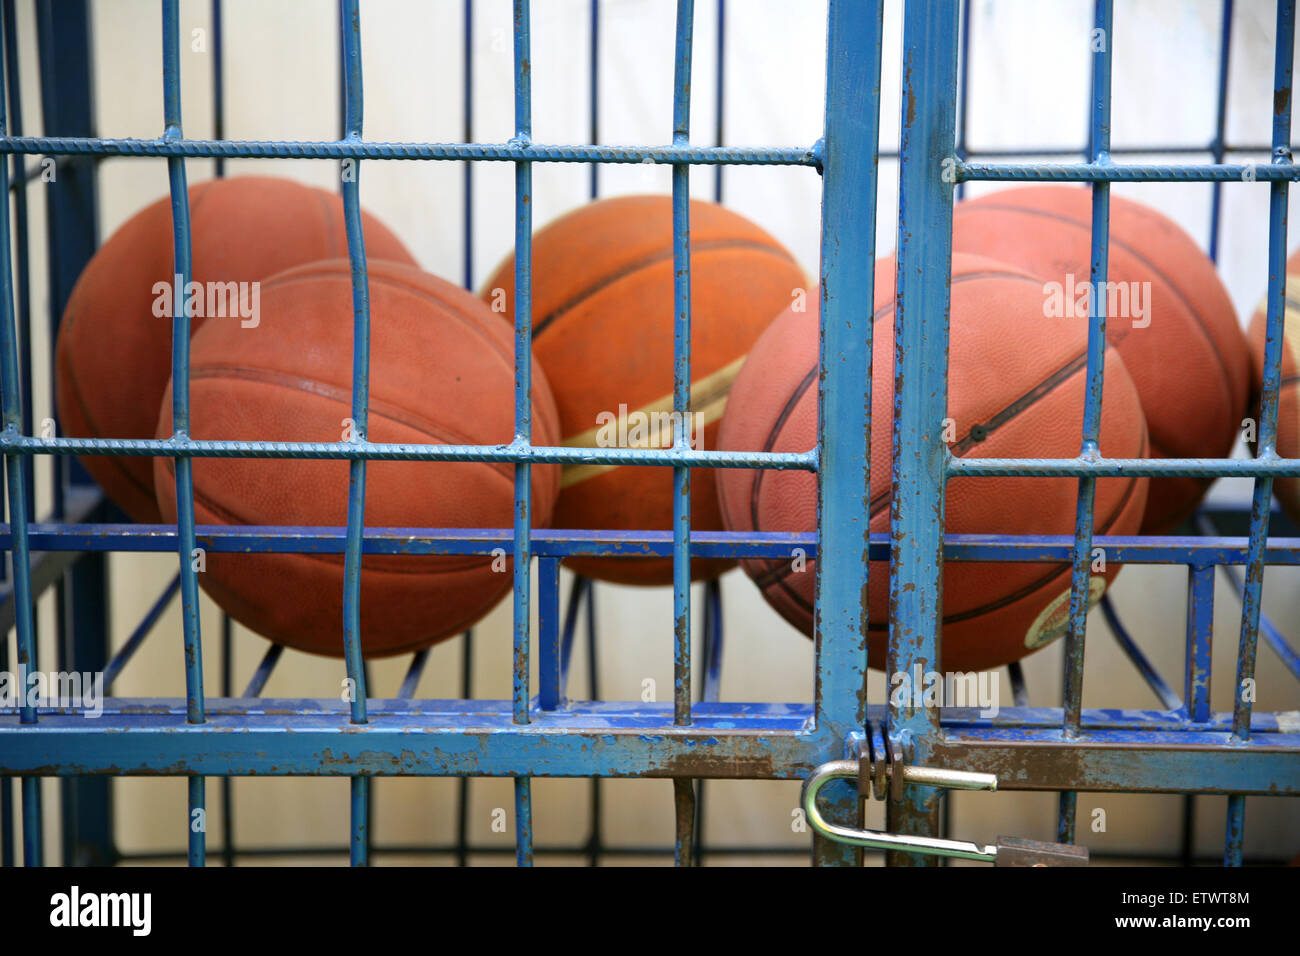 Alte Korb Gummibälle in einer Turnhalle wie ein Gefängnis Stockfoto